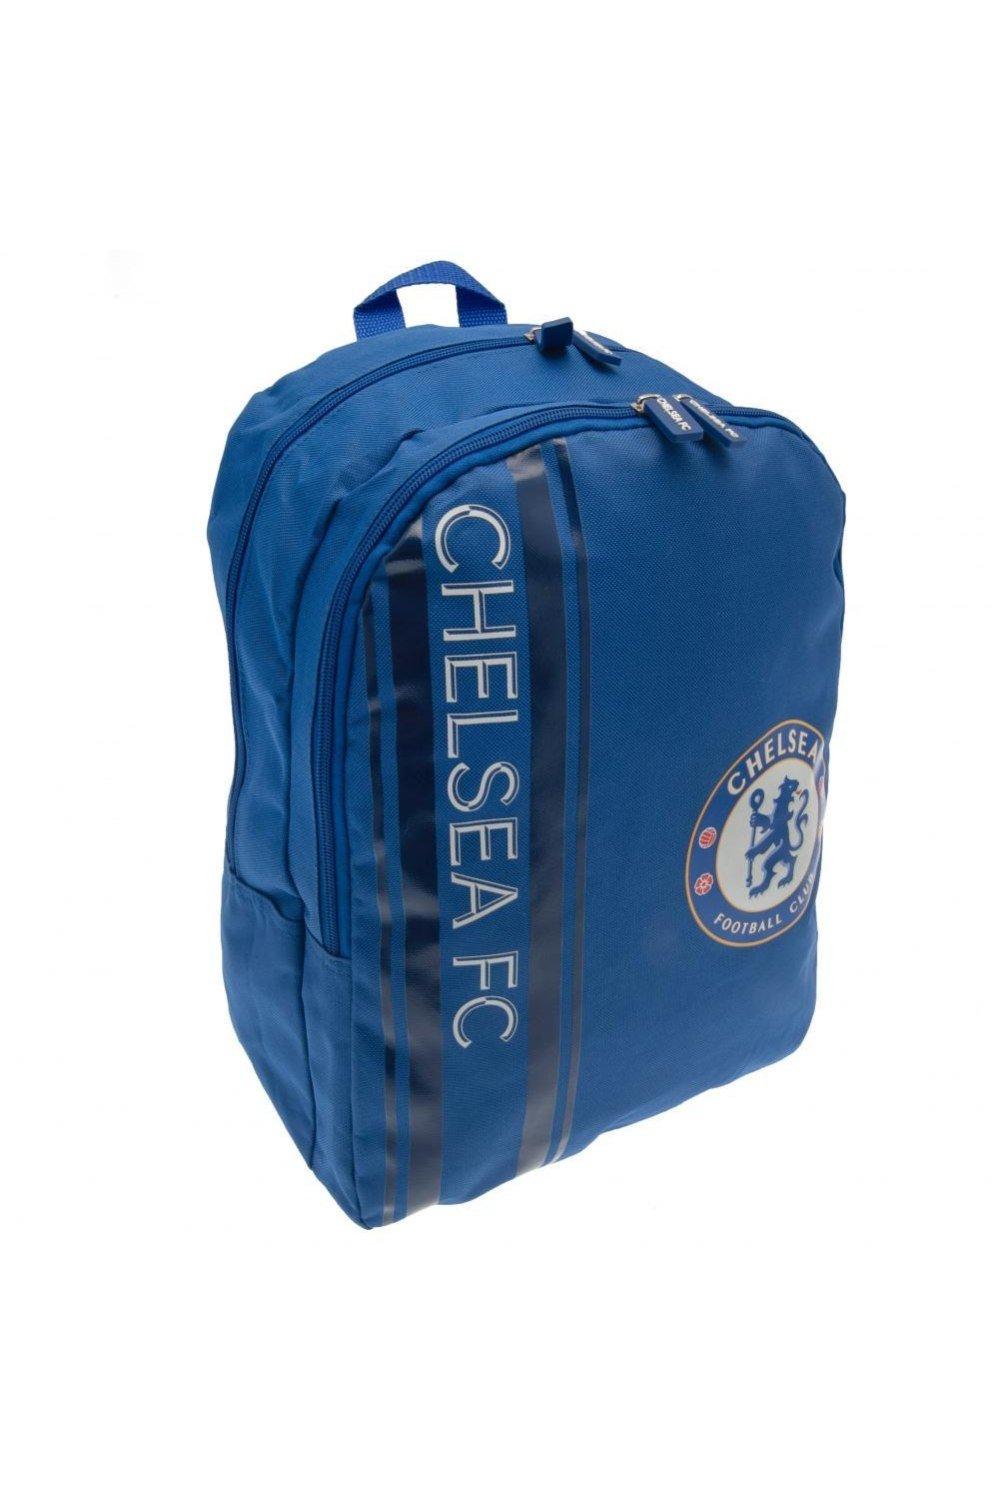 Рюкзак Chelsea FC, синий